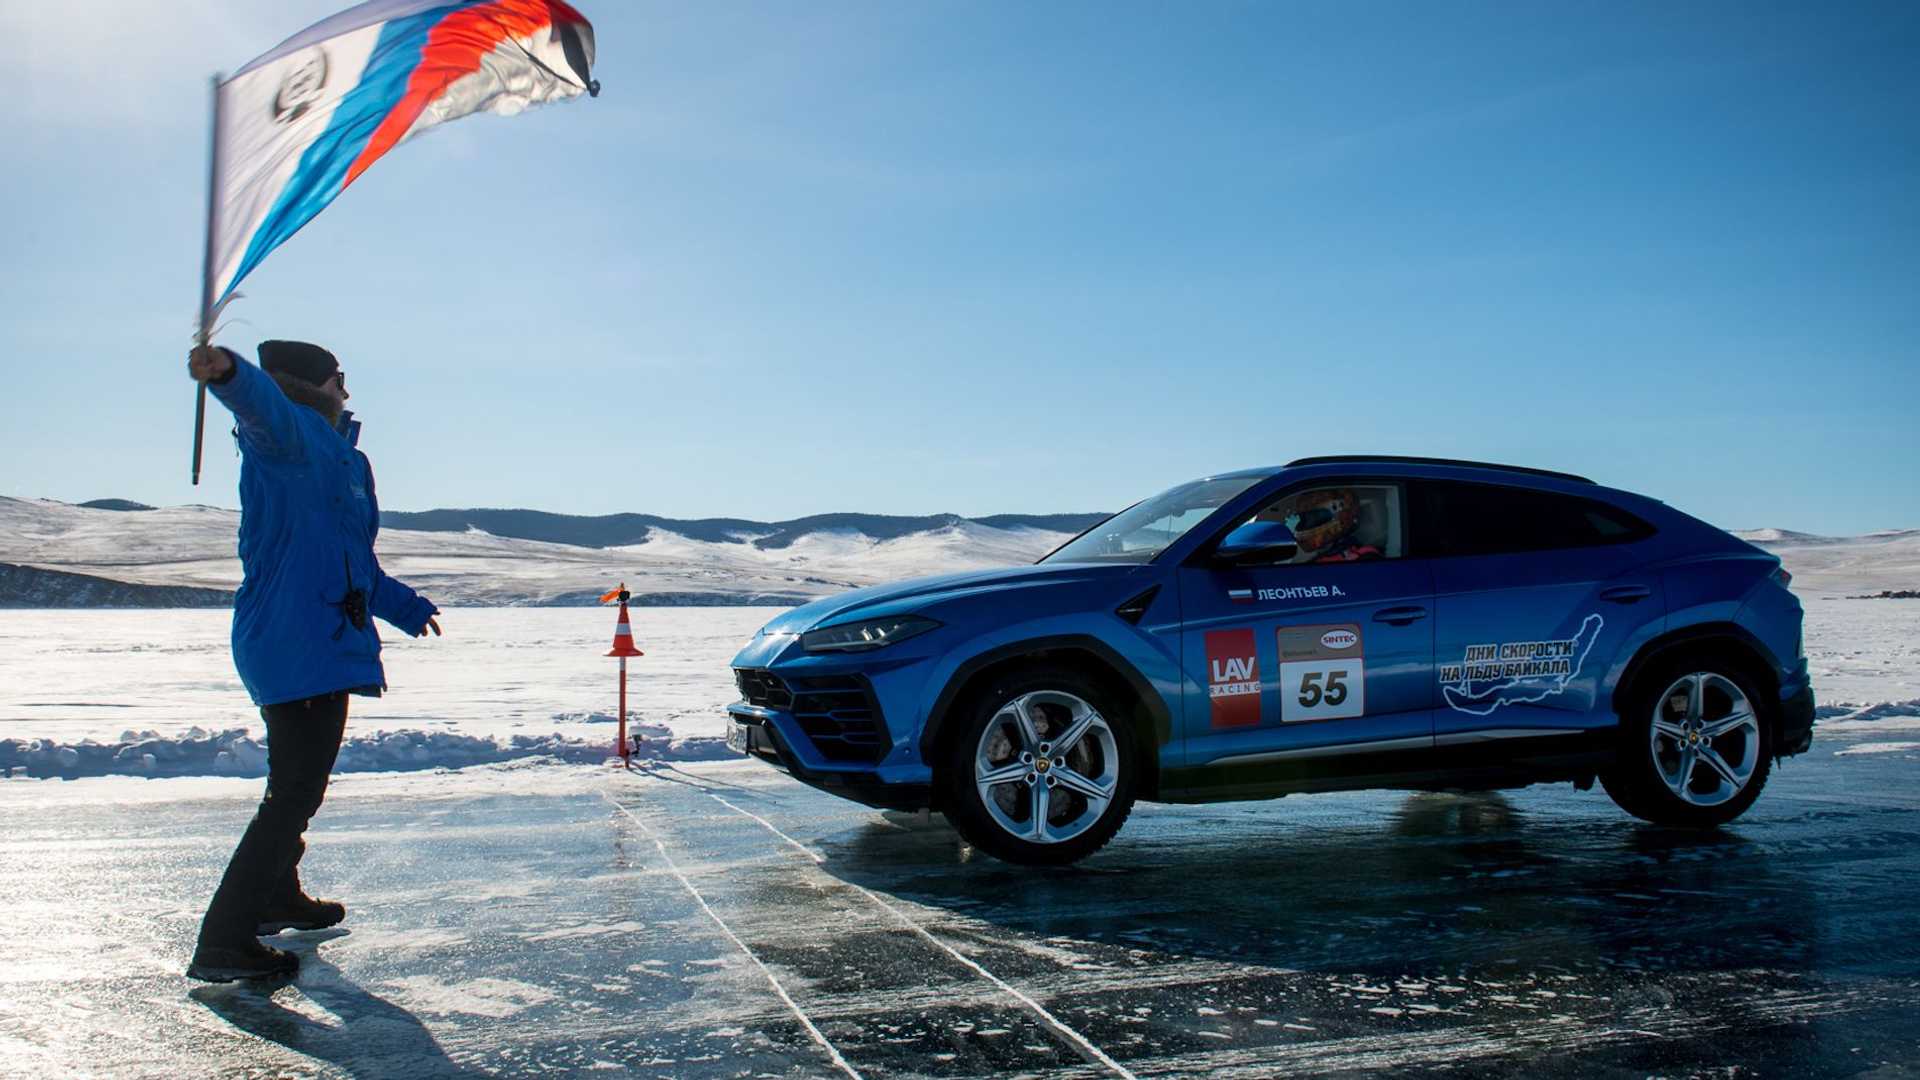 نمای جانبی کراس اور لامبورگینی اوروس / Lamborghini Urus آبی رنگ روی یخ